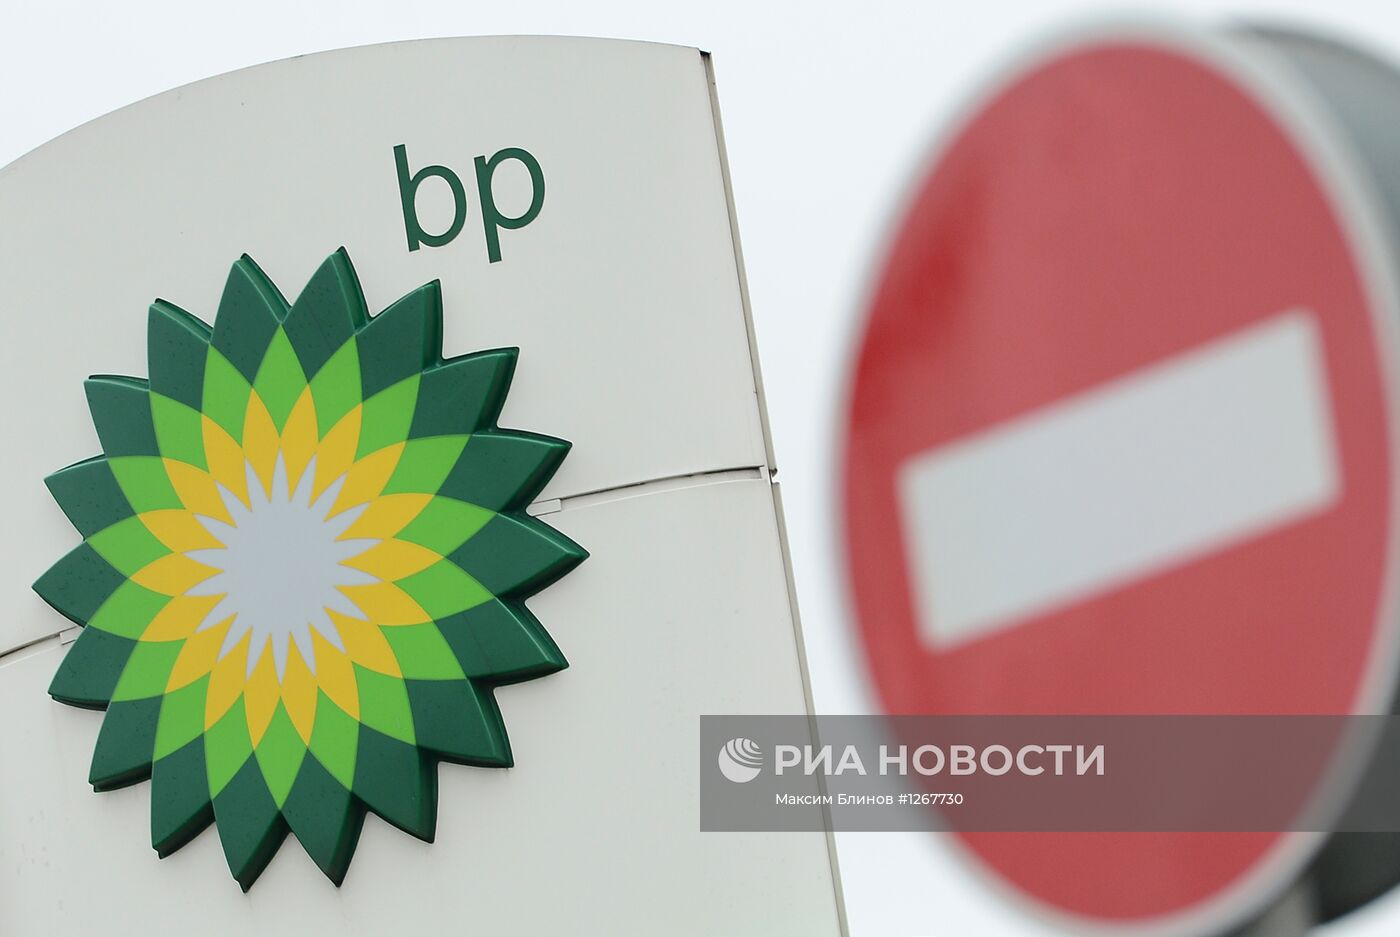 Вывеска одного из заправочных комплексов BP в Москве